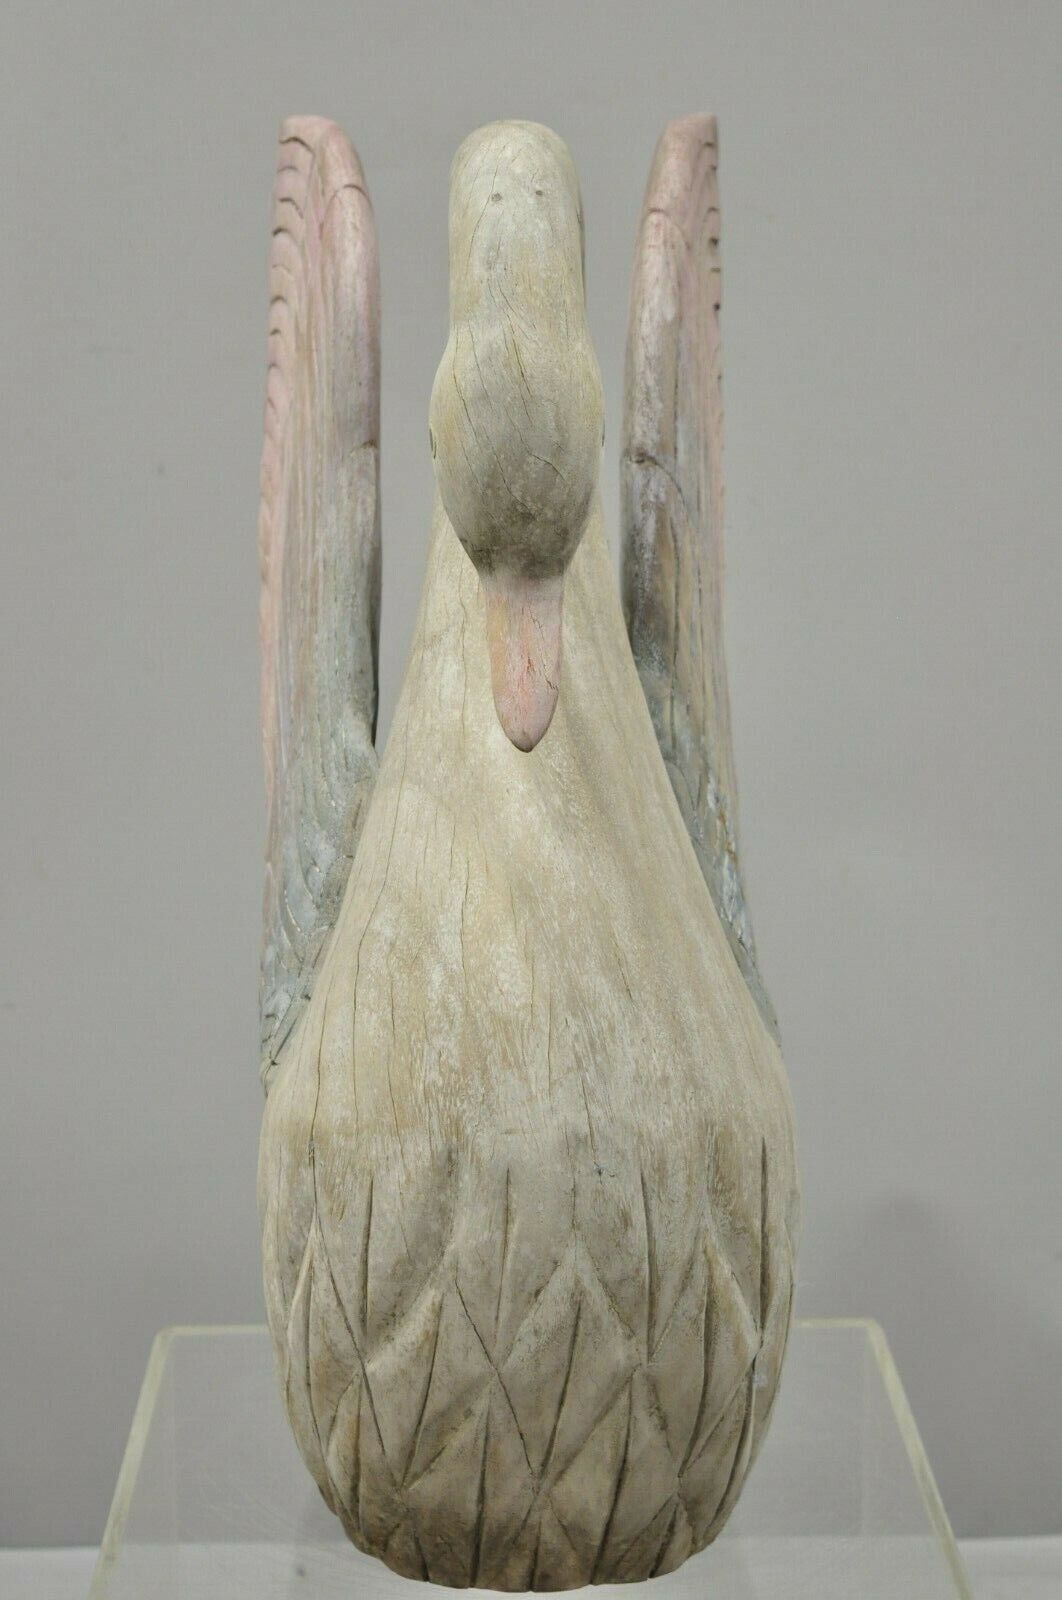 Large Vintage Carved Wood 26" Regency Swan Statue Figure Pedestal Table Base